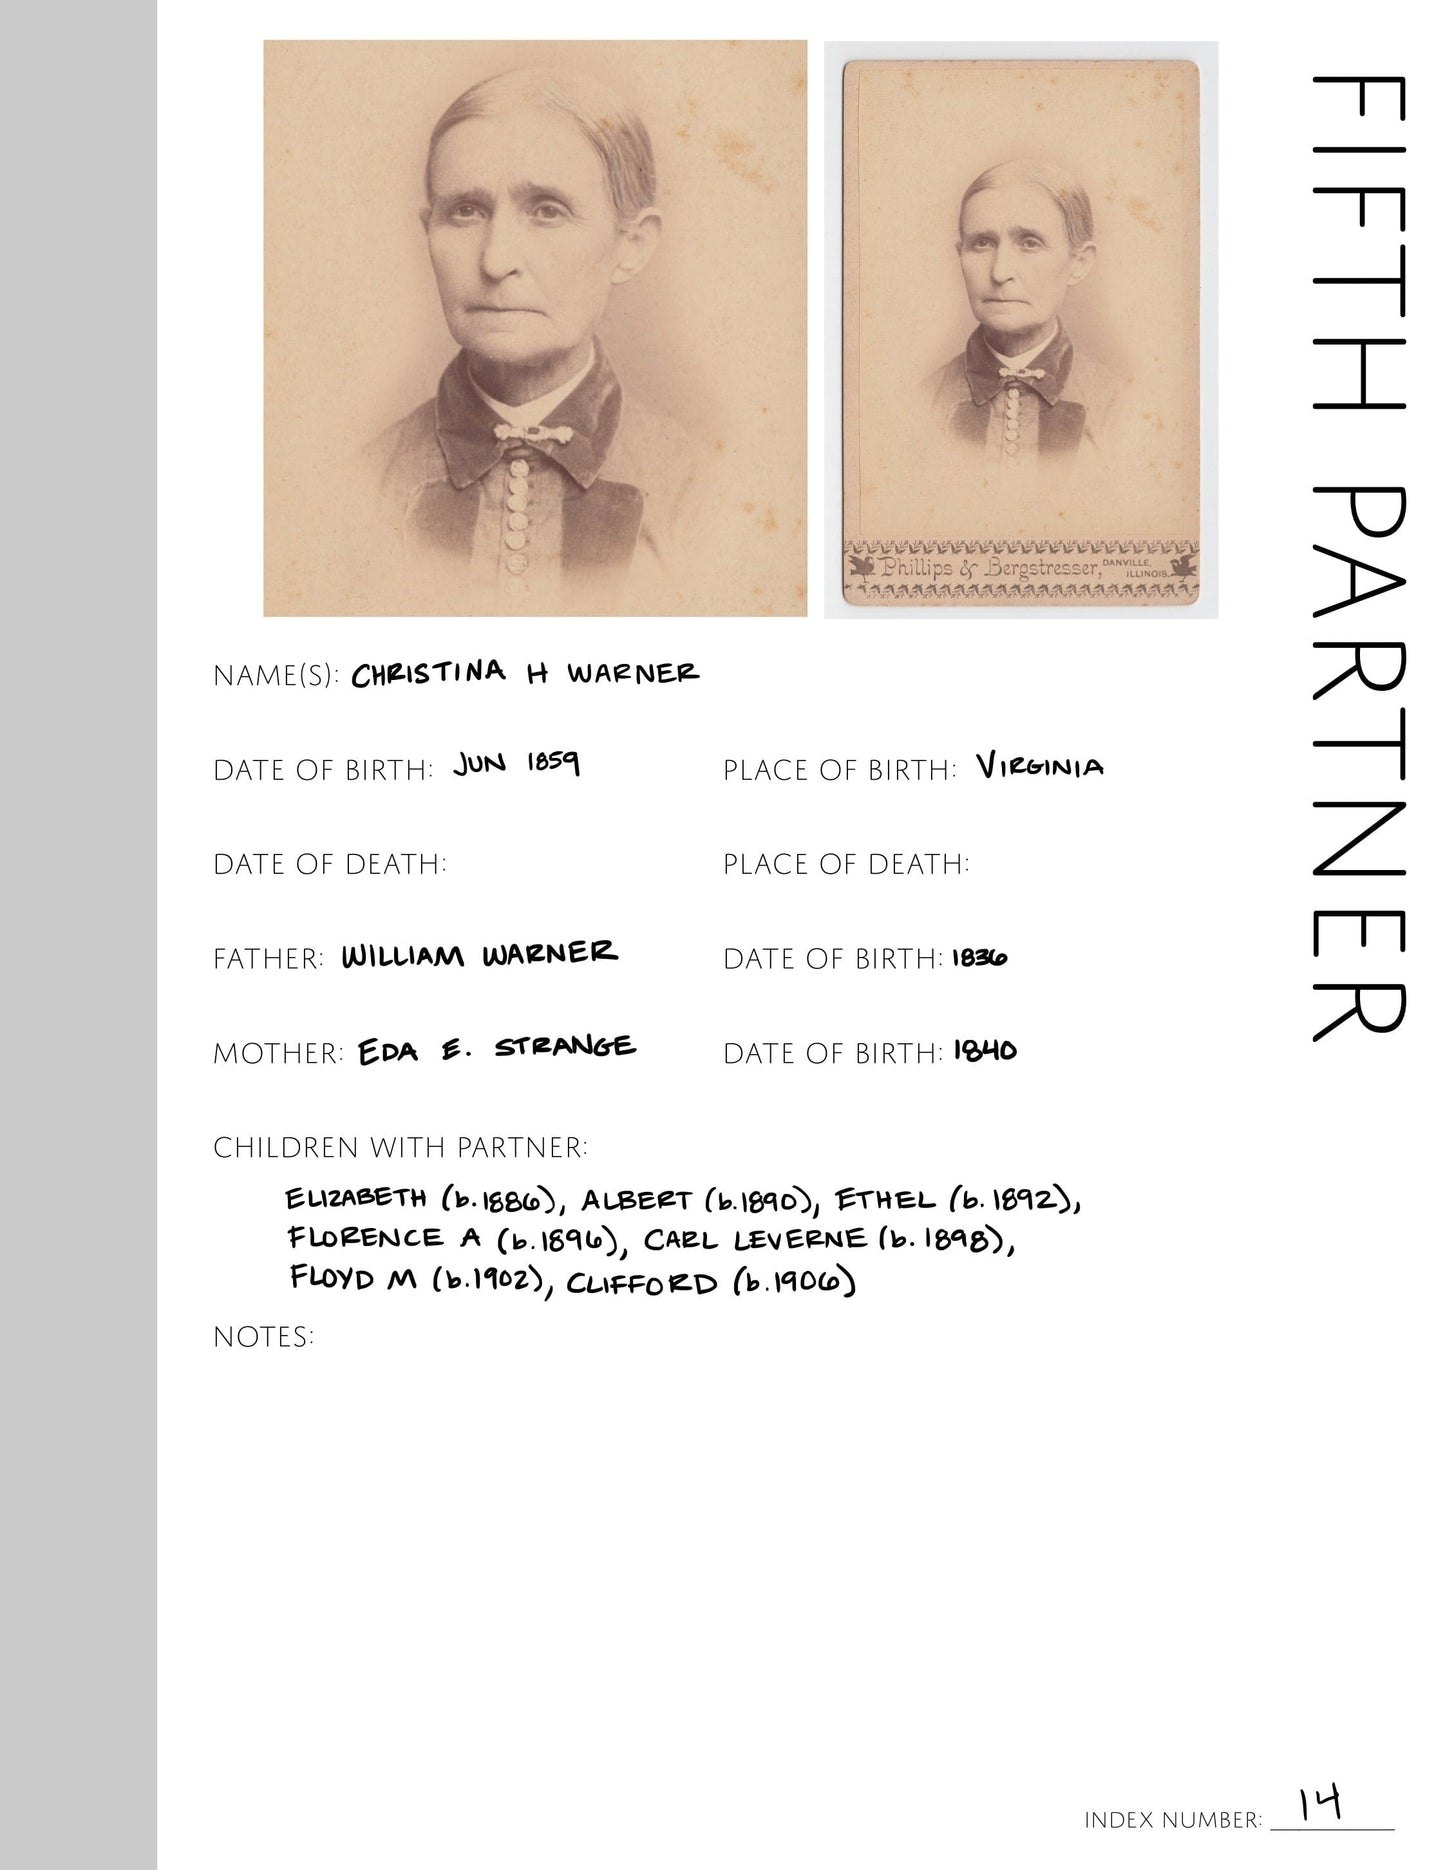 Fifth Partner: Printable Genealogy Page (Digital Download)